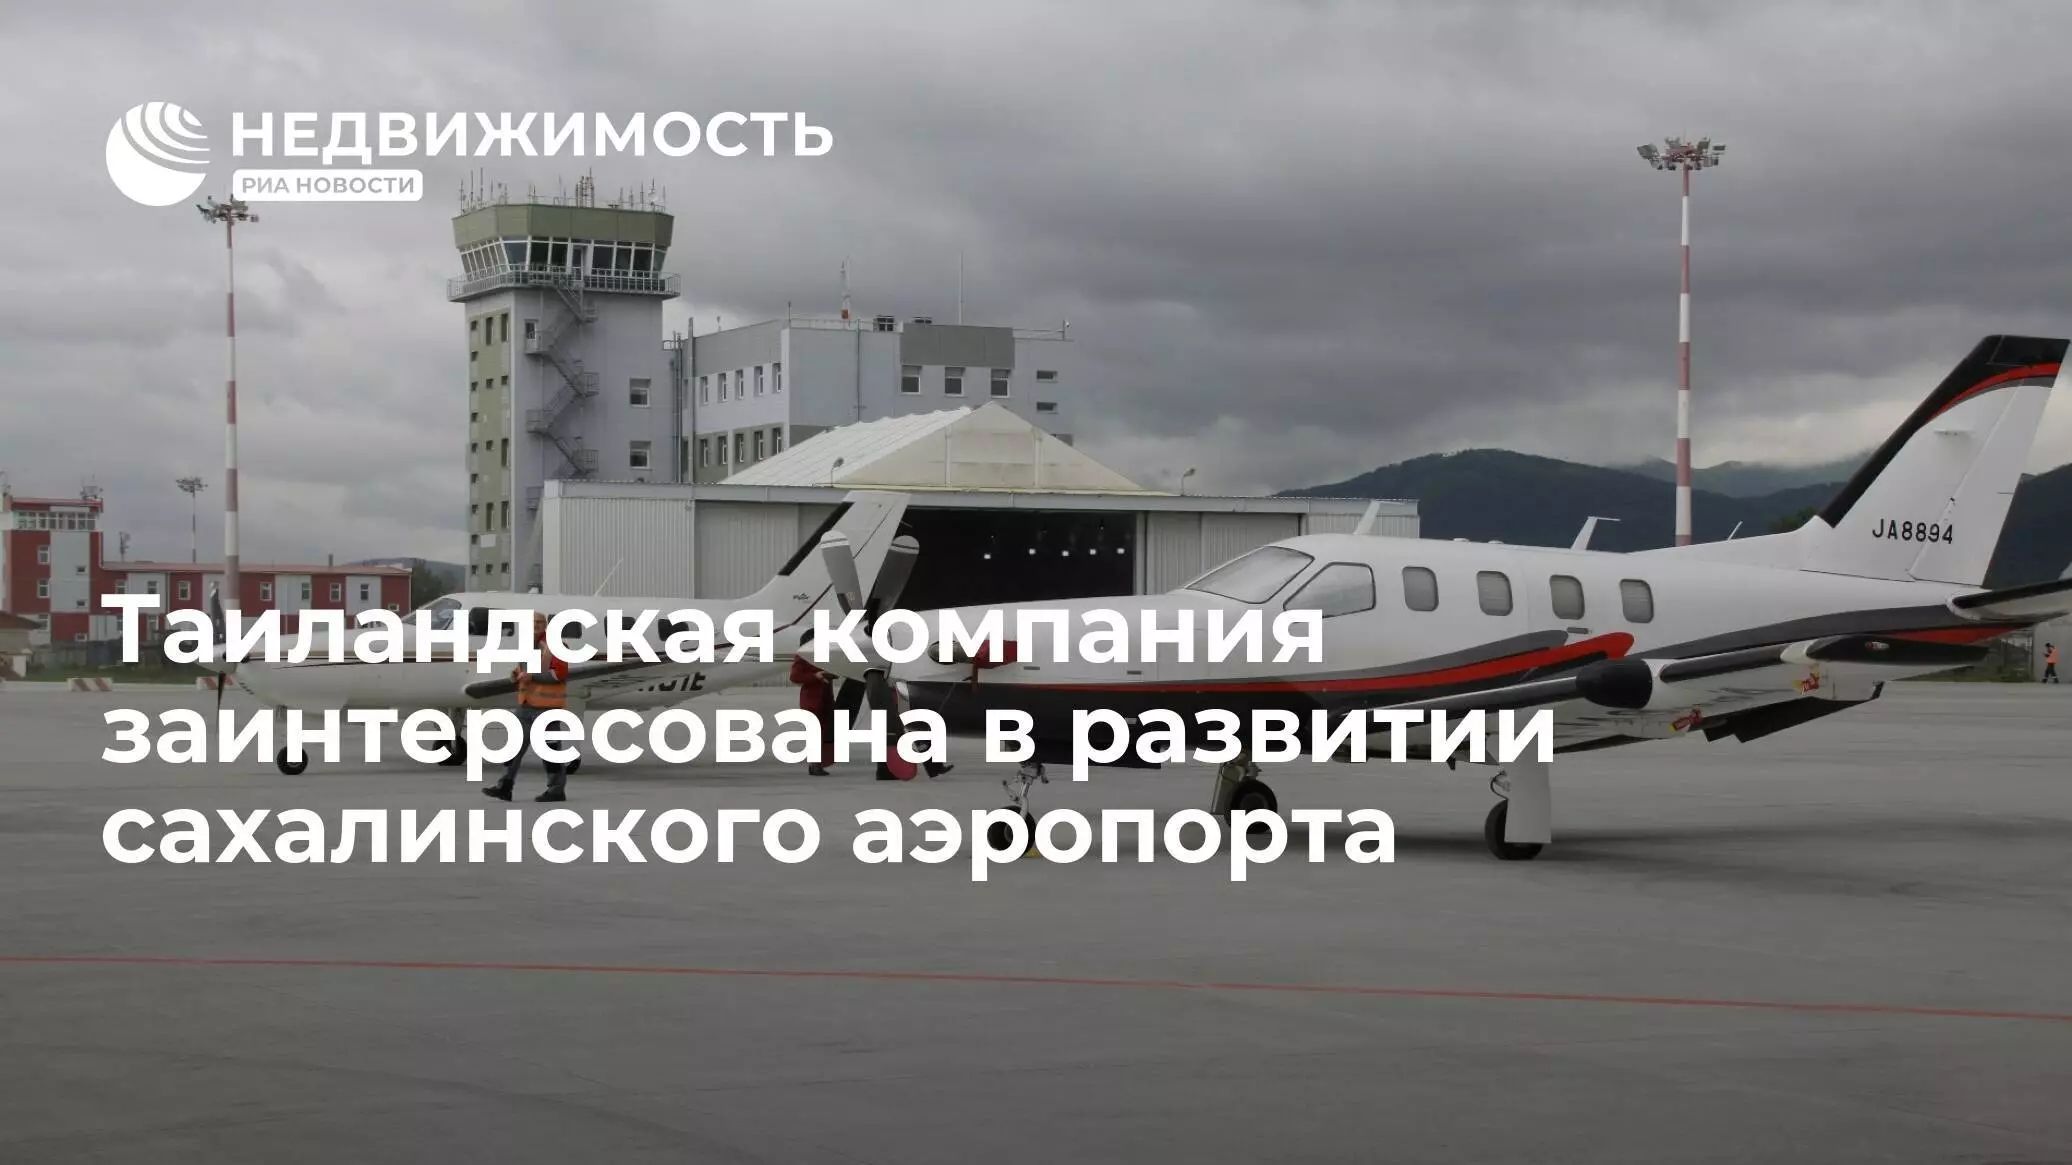 Автовокзал южно сахалинска как доехать из аэропорта | авиакомпании и авиалинии россии и мира